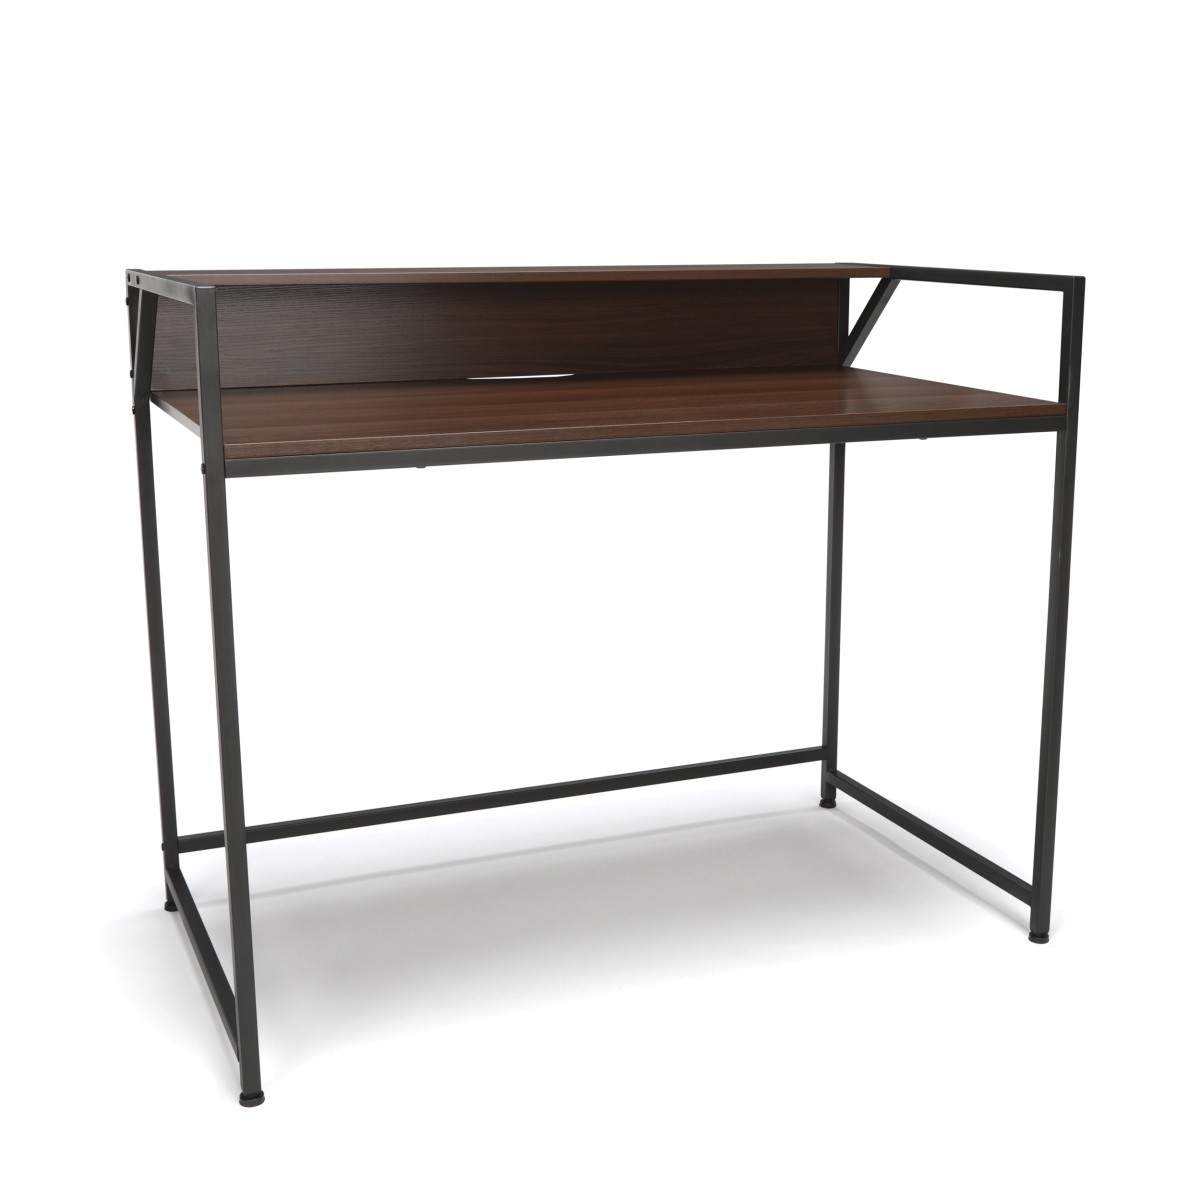 Ess-1003-gry-wnt Computer Desk With Shelf, Gray With Walnut